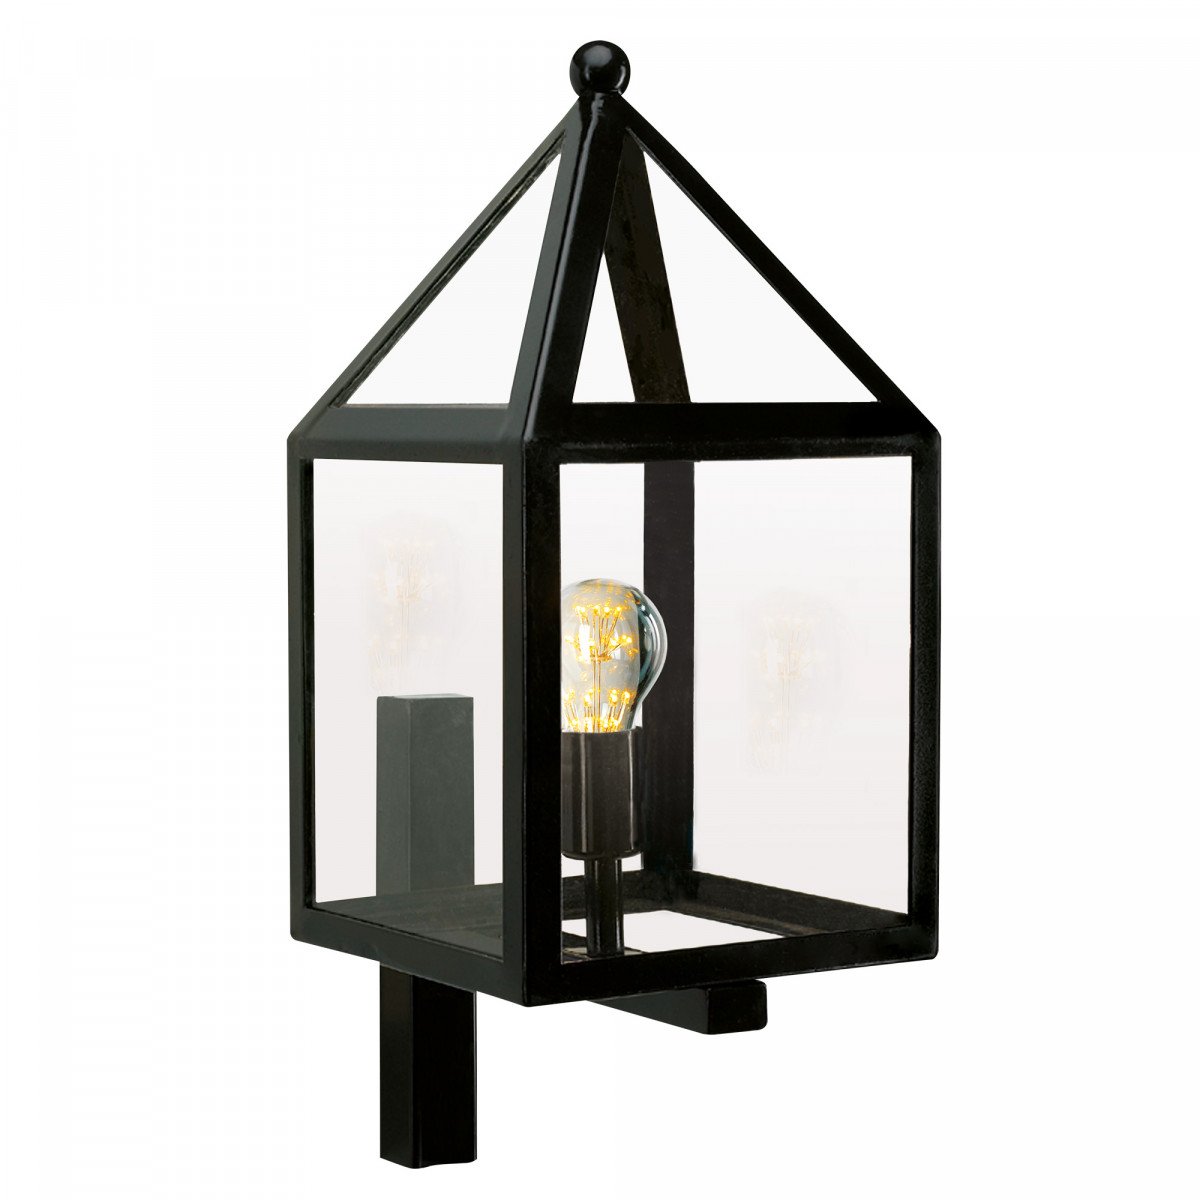 applique d'extérieur noire avec boîtier en acier inoxydable, verre clair, ampoule visible dans le luminaire, forme maisons 